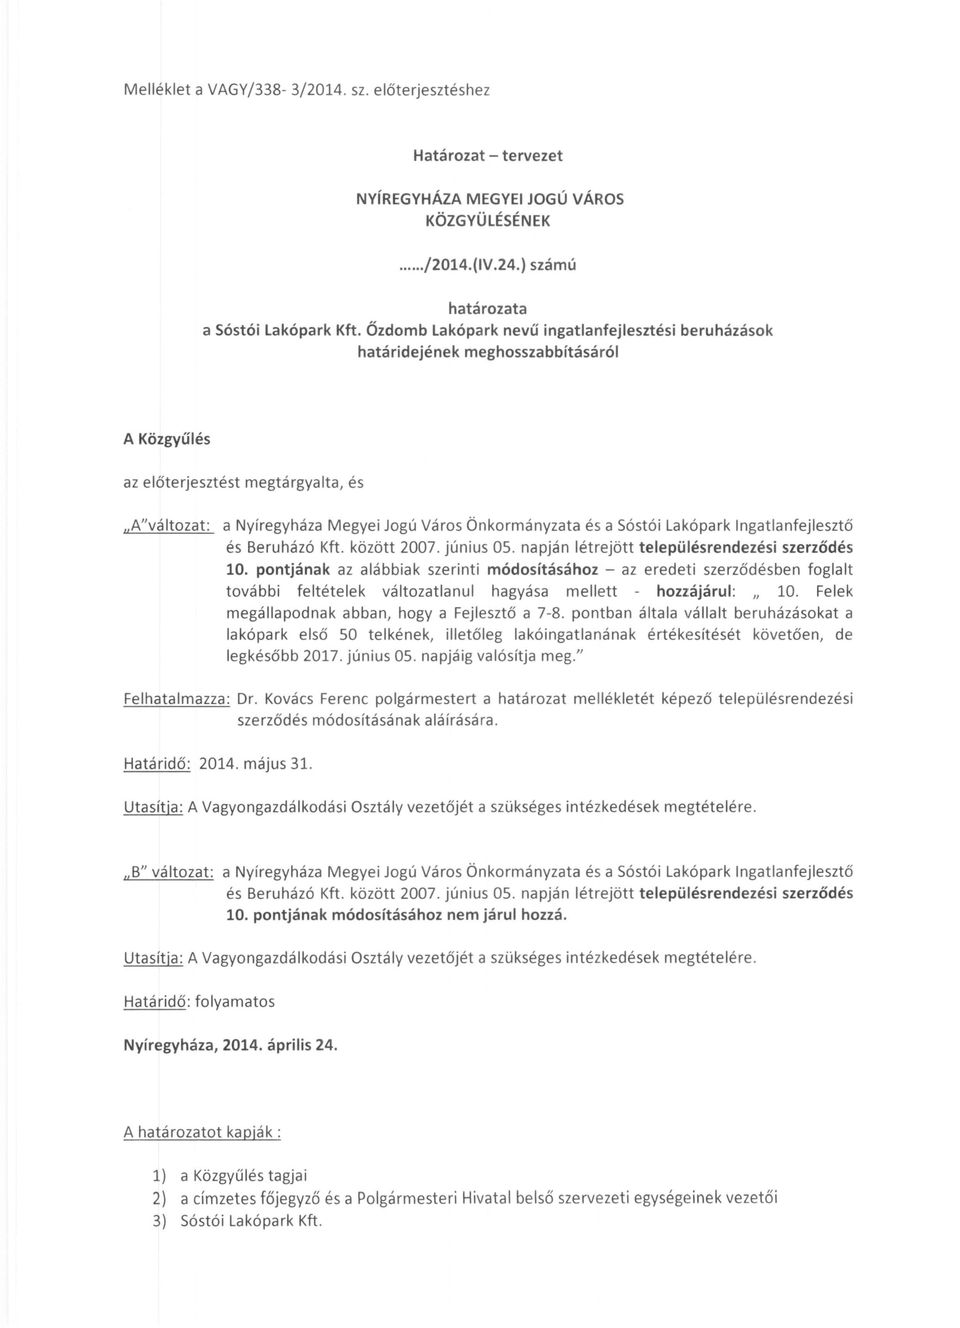 Sóstói Lakópark Ingatlanfejlesztő és Beruházó Kft. között 2007. június 05. napján létrejött településrendezési szerződés 10.